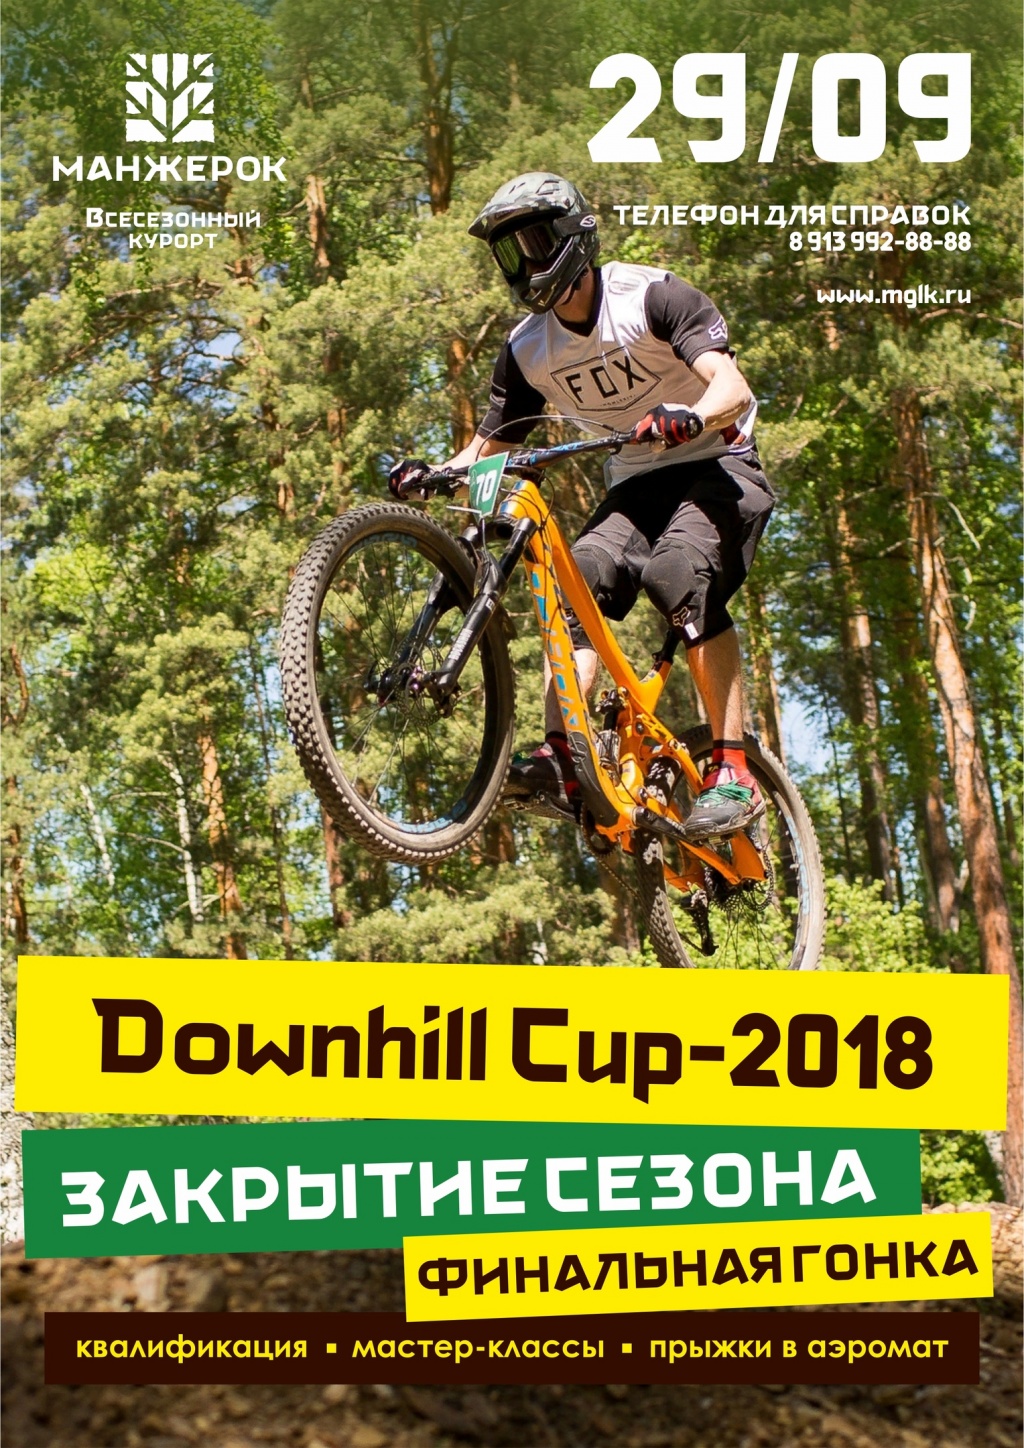 Личный блог: Mangerok Downhill Cup 2018 29 сентября, Горный Алтай